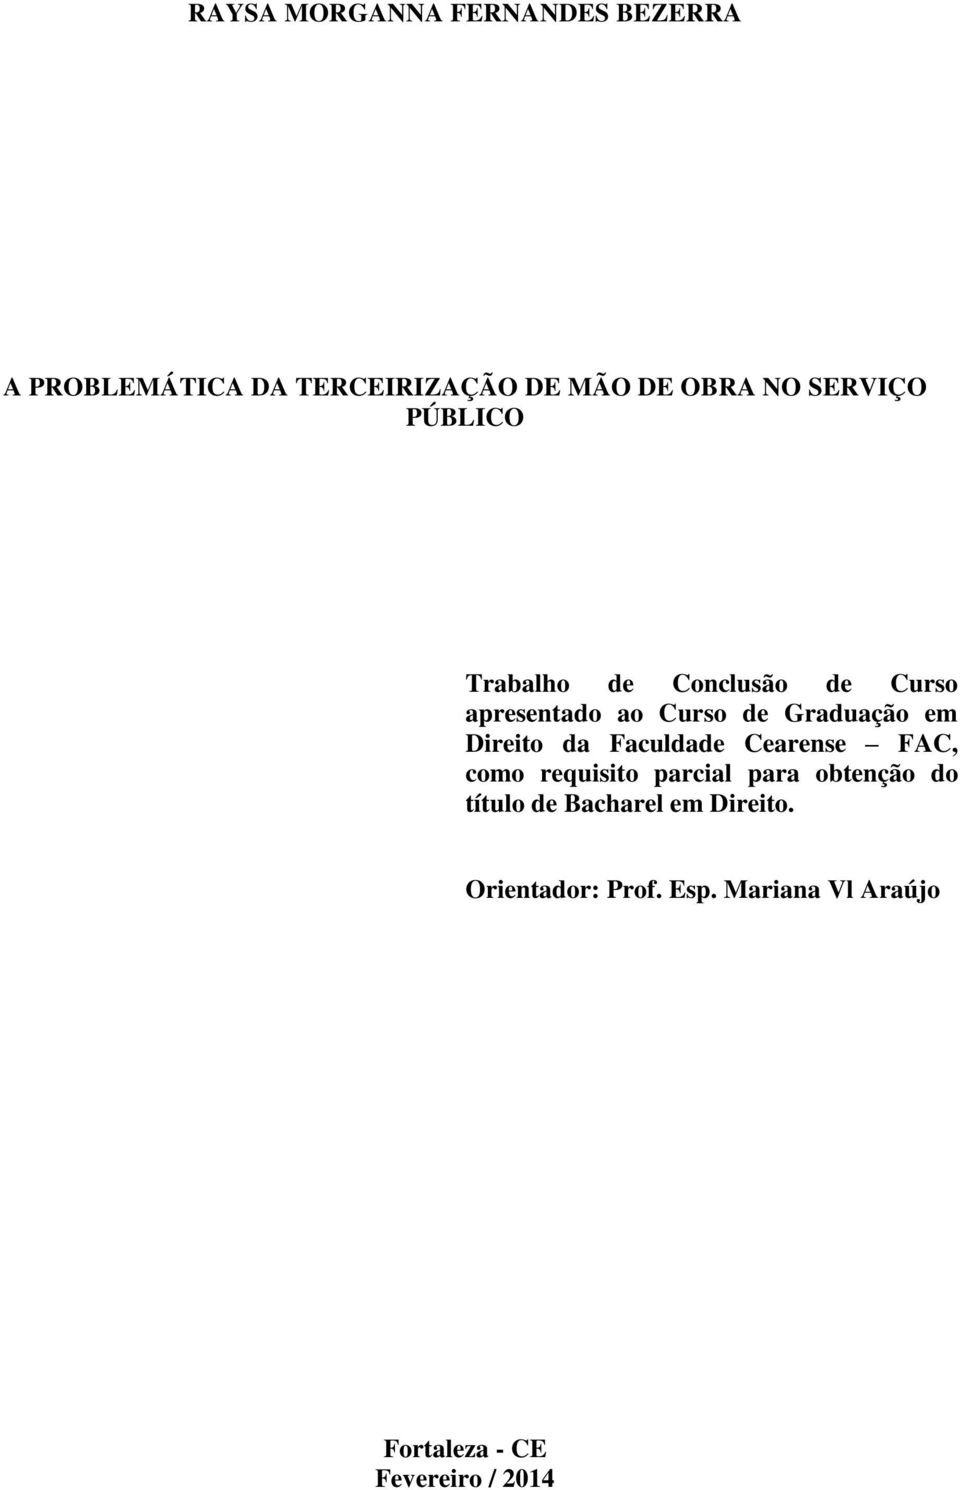 Direito da Faculdade Cearense FAC, como requisito parcial para obtenção do título de